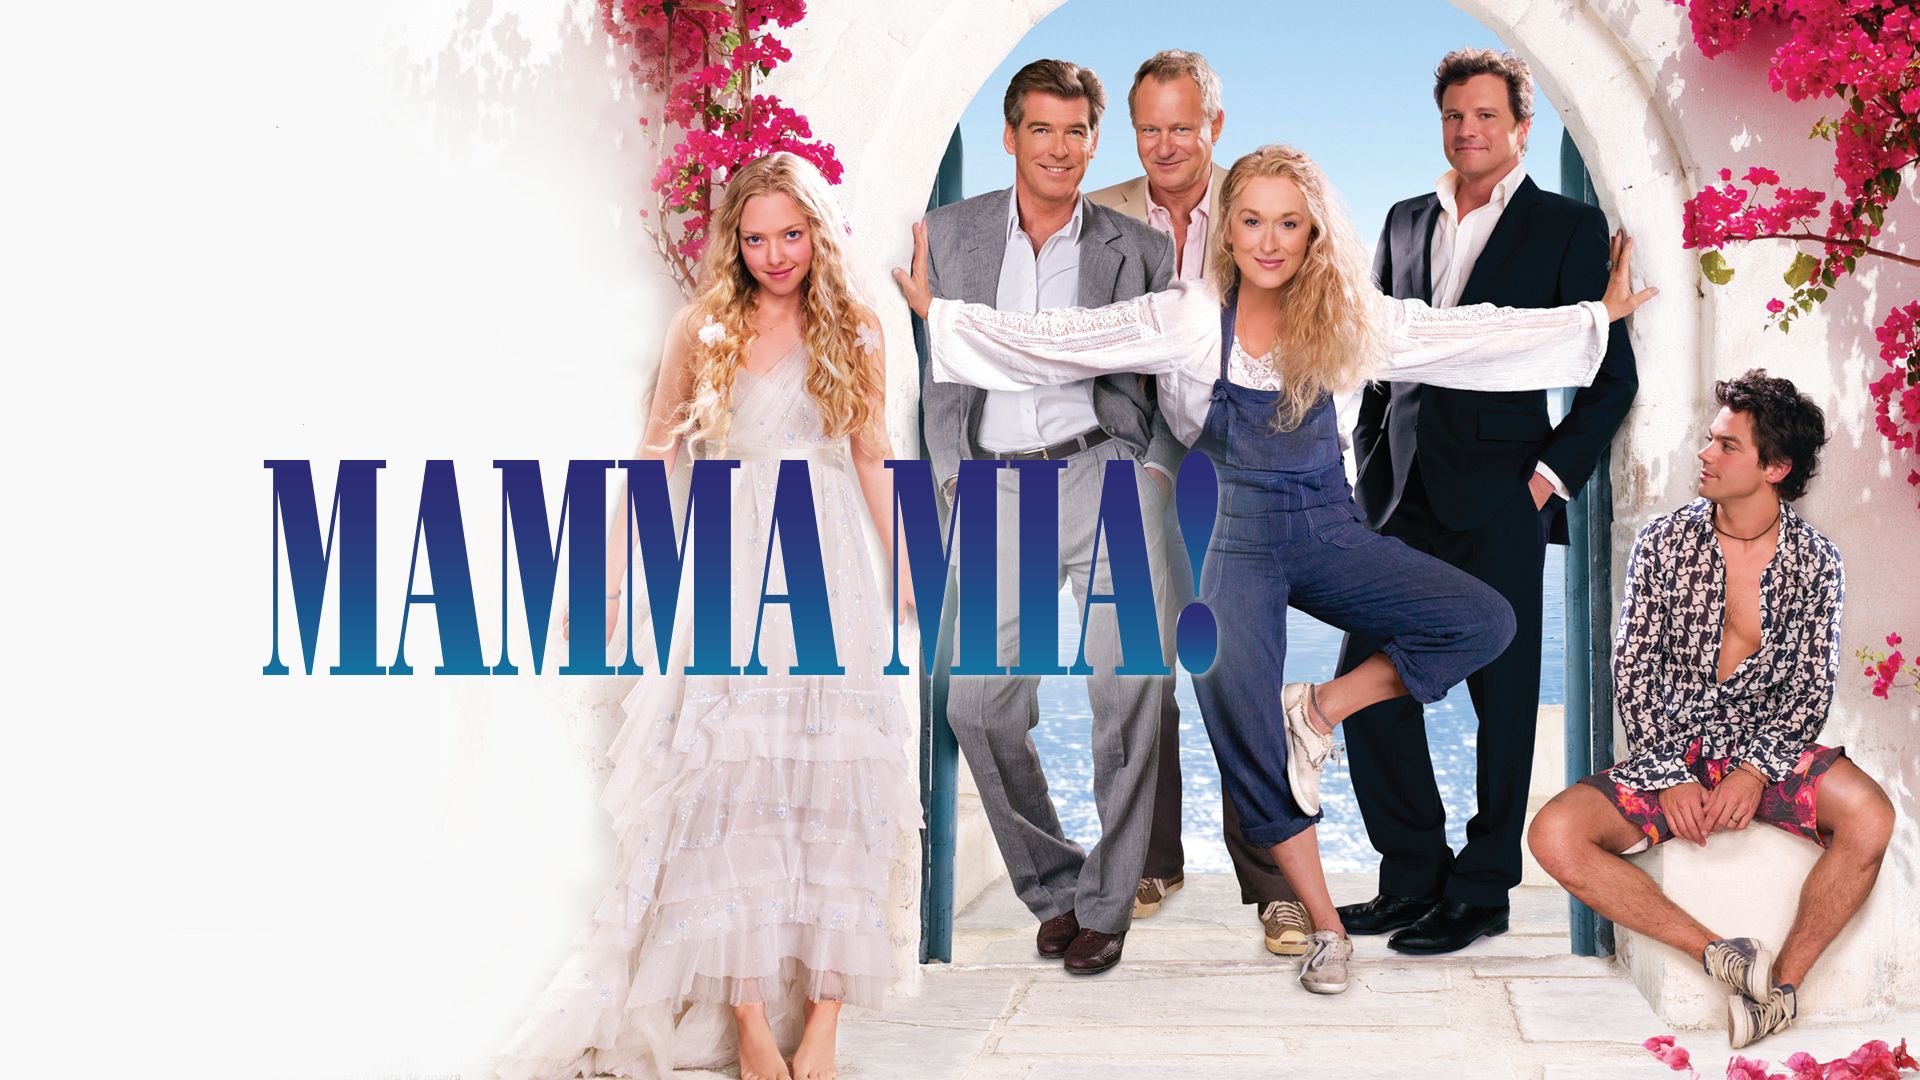 Мама миа отзывы. Мамма Миа 2008. Mamma Mia! / Mamma Mia! (2008) Пирс Броснан. Сюжет Мамма Миа 2.